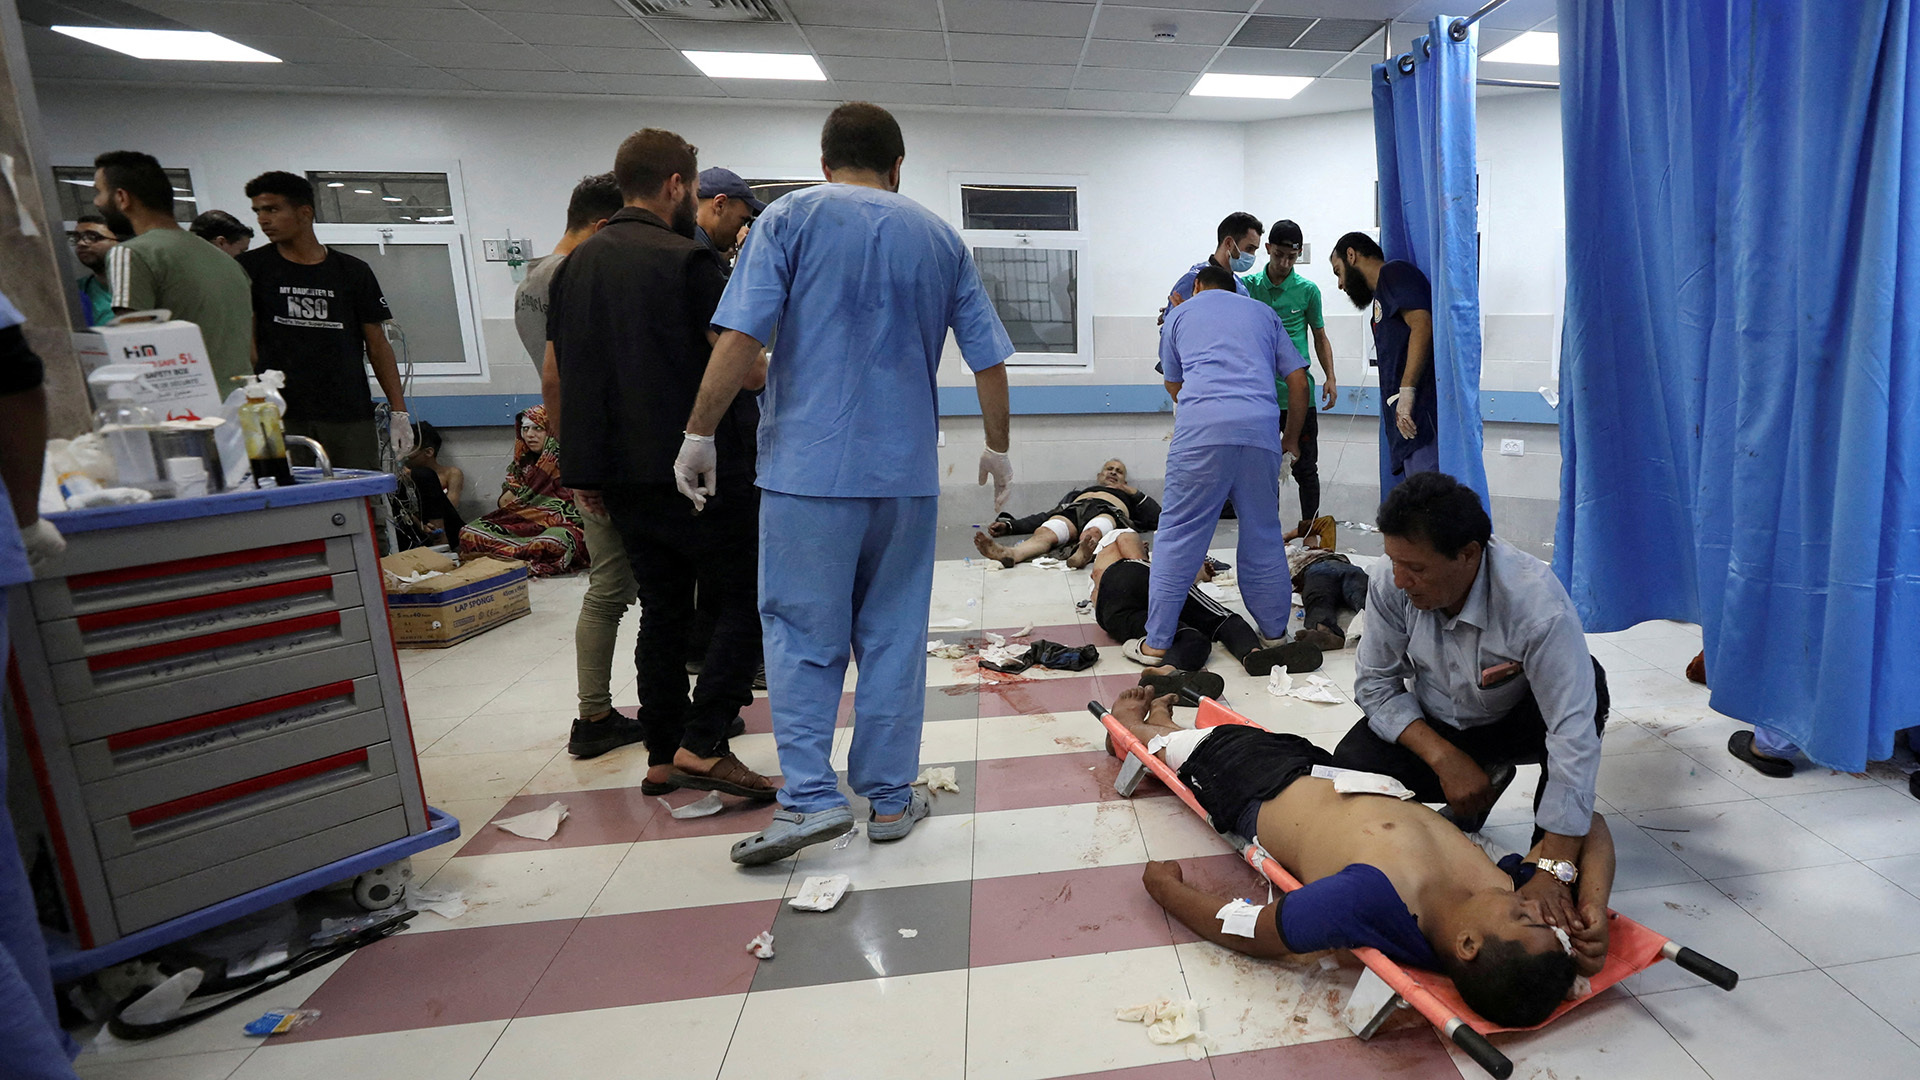 إصابة مدير عام الصحة بغزة واستشهاد ابنته في قصف إسرائيلي | أخبار – البوكس نيوز